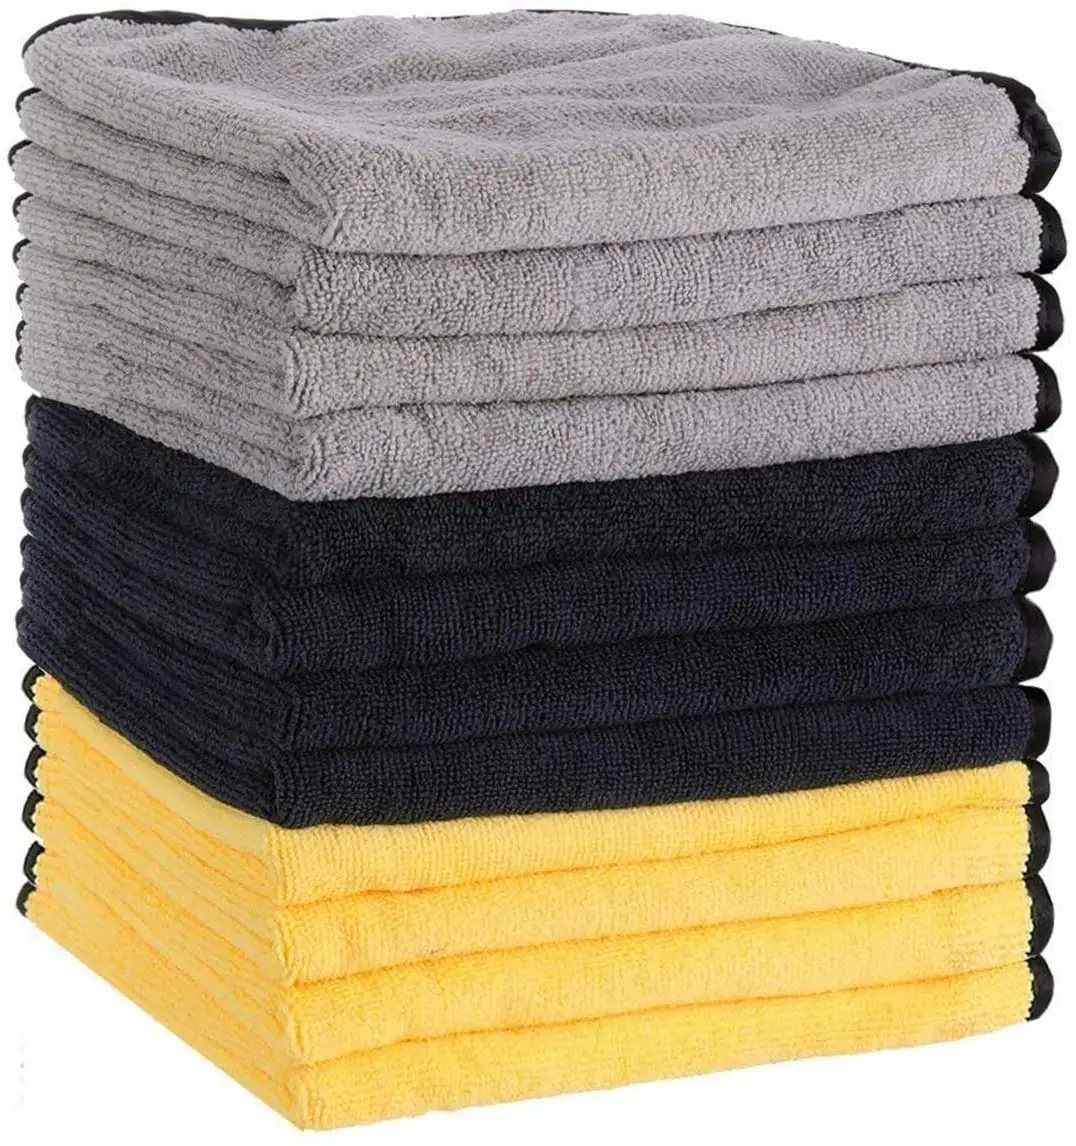 Premium Microfiber Towels for Cars Detailing Drying Towels for Cleaning Microfiber Cleaning Cloths